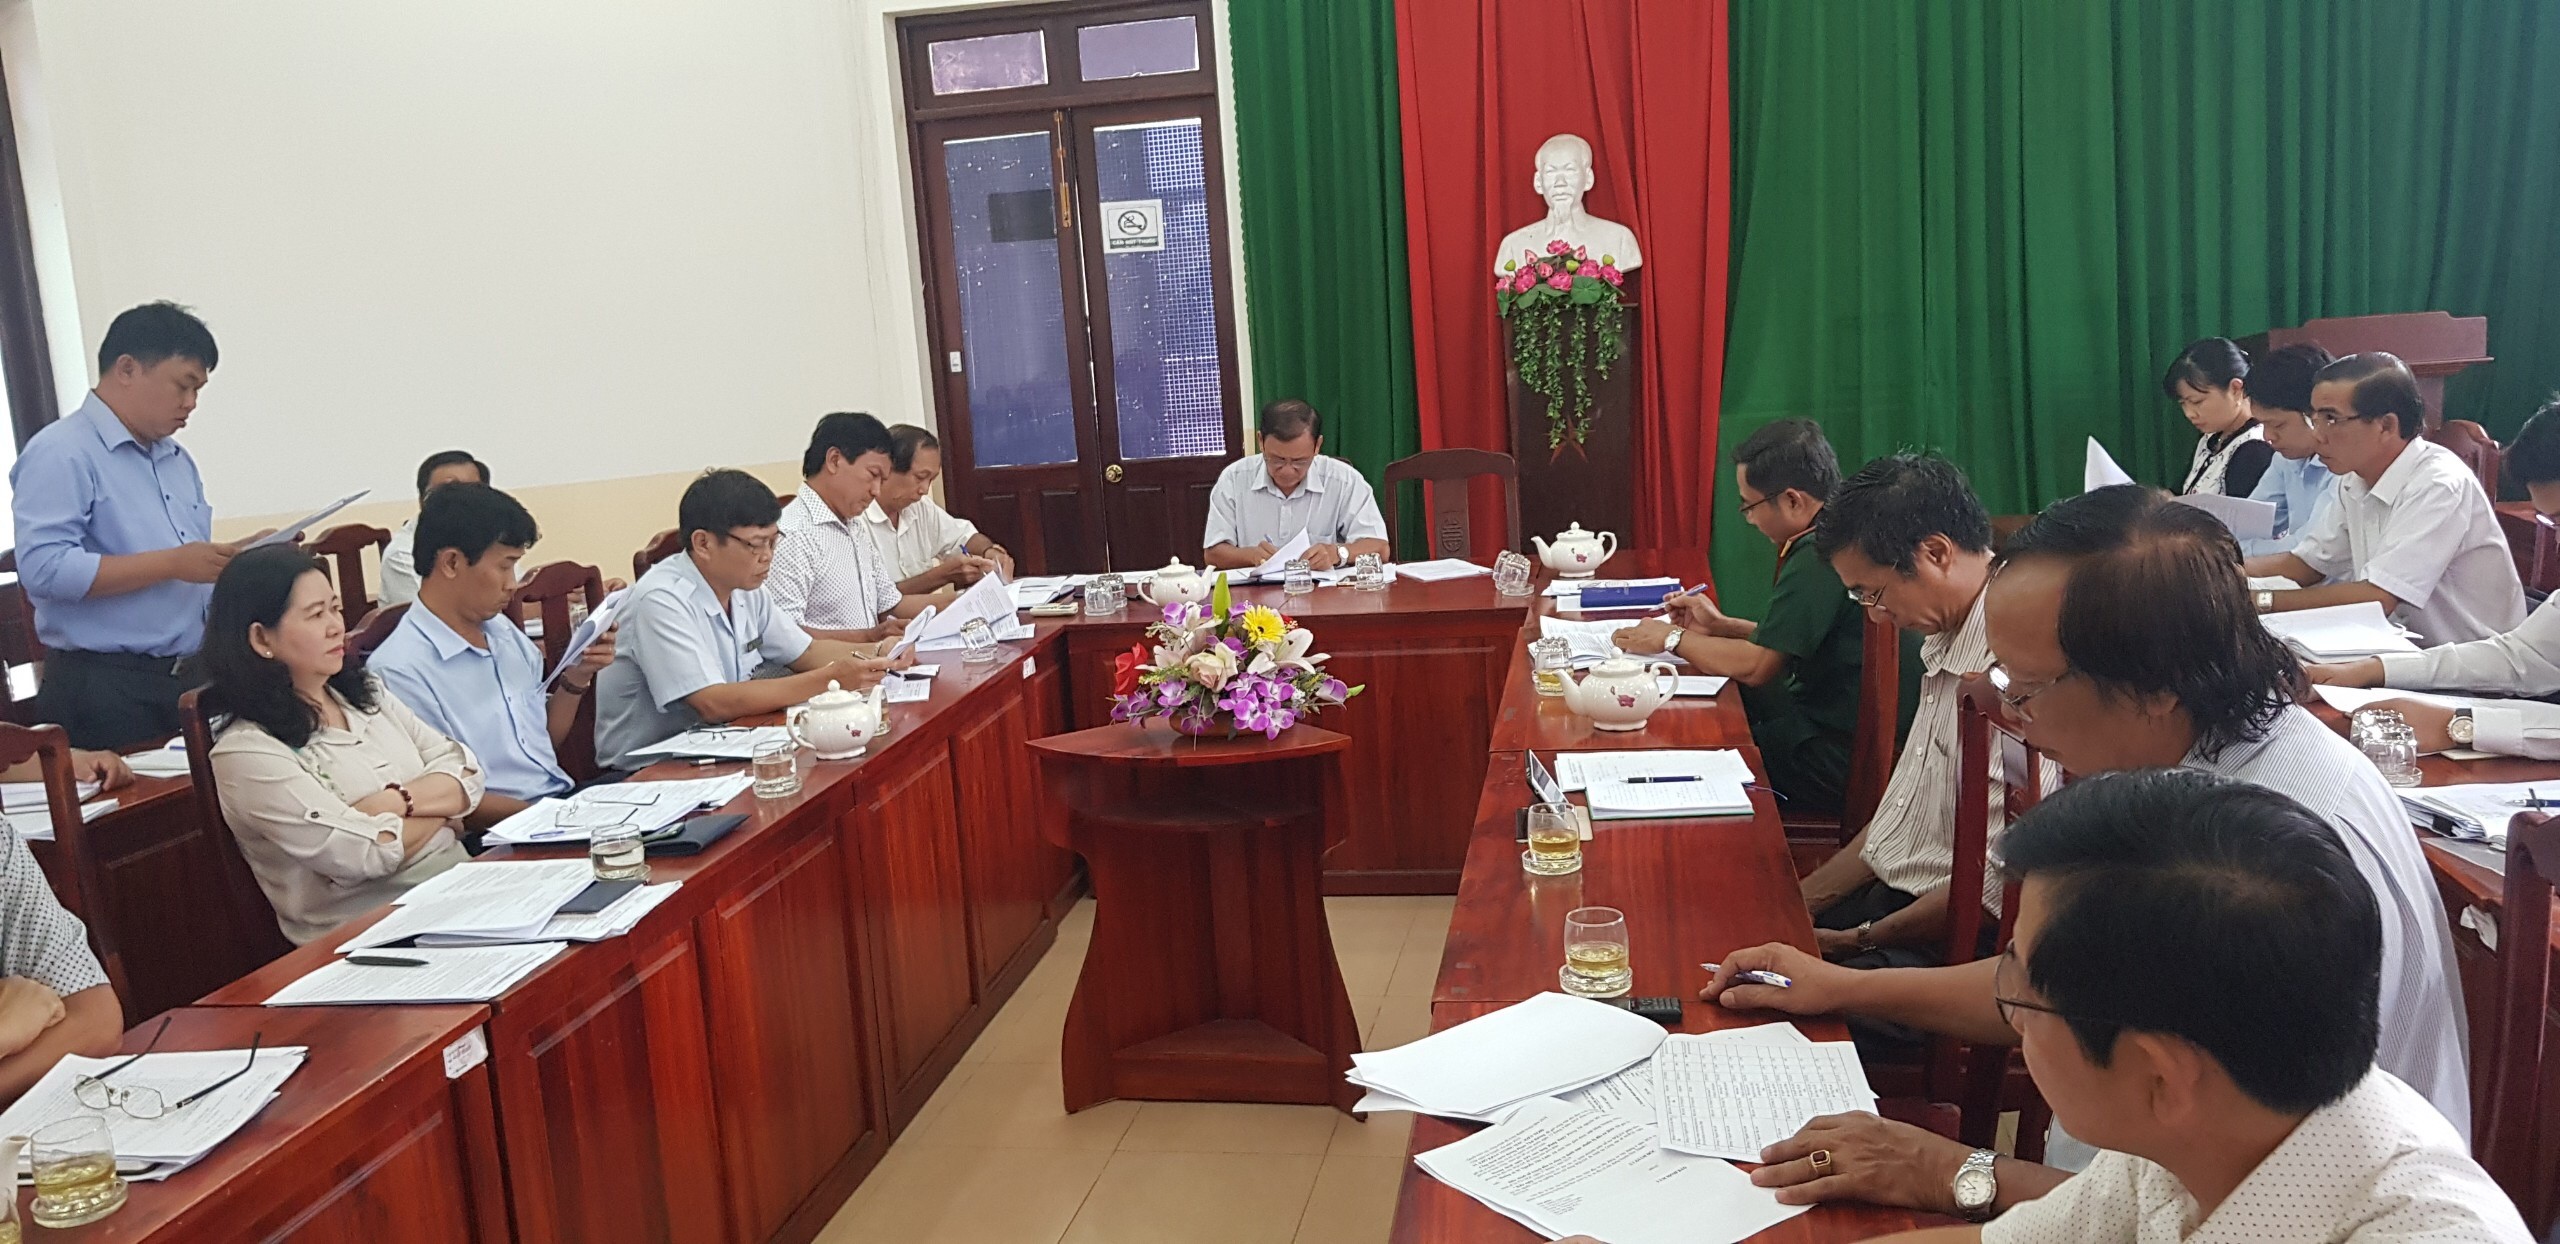 UBND huyện Hòa Thành họp thường kỳ  về xây dựng cơ bản quý I năm 2019